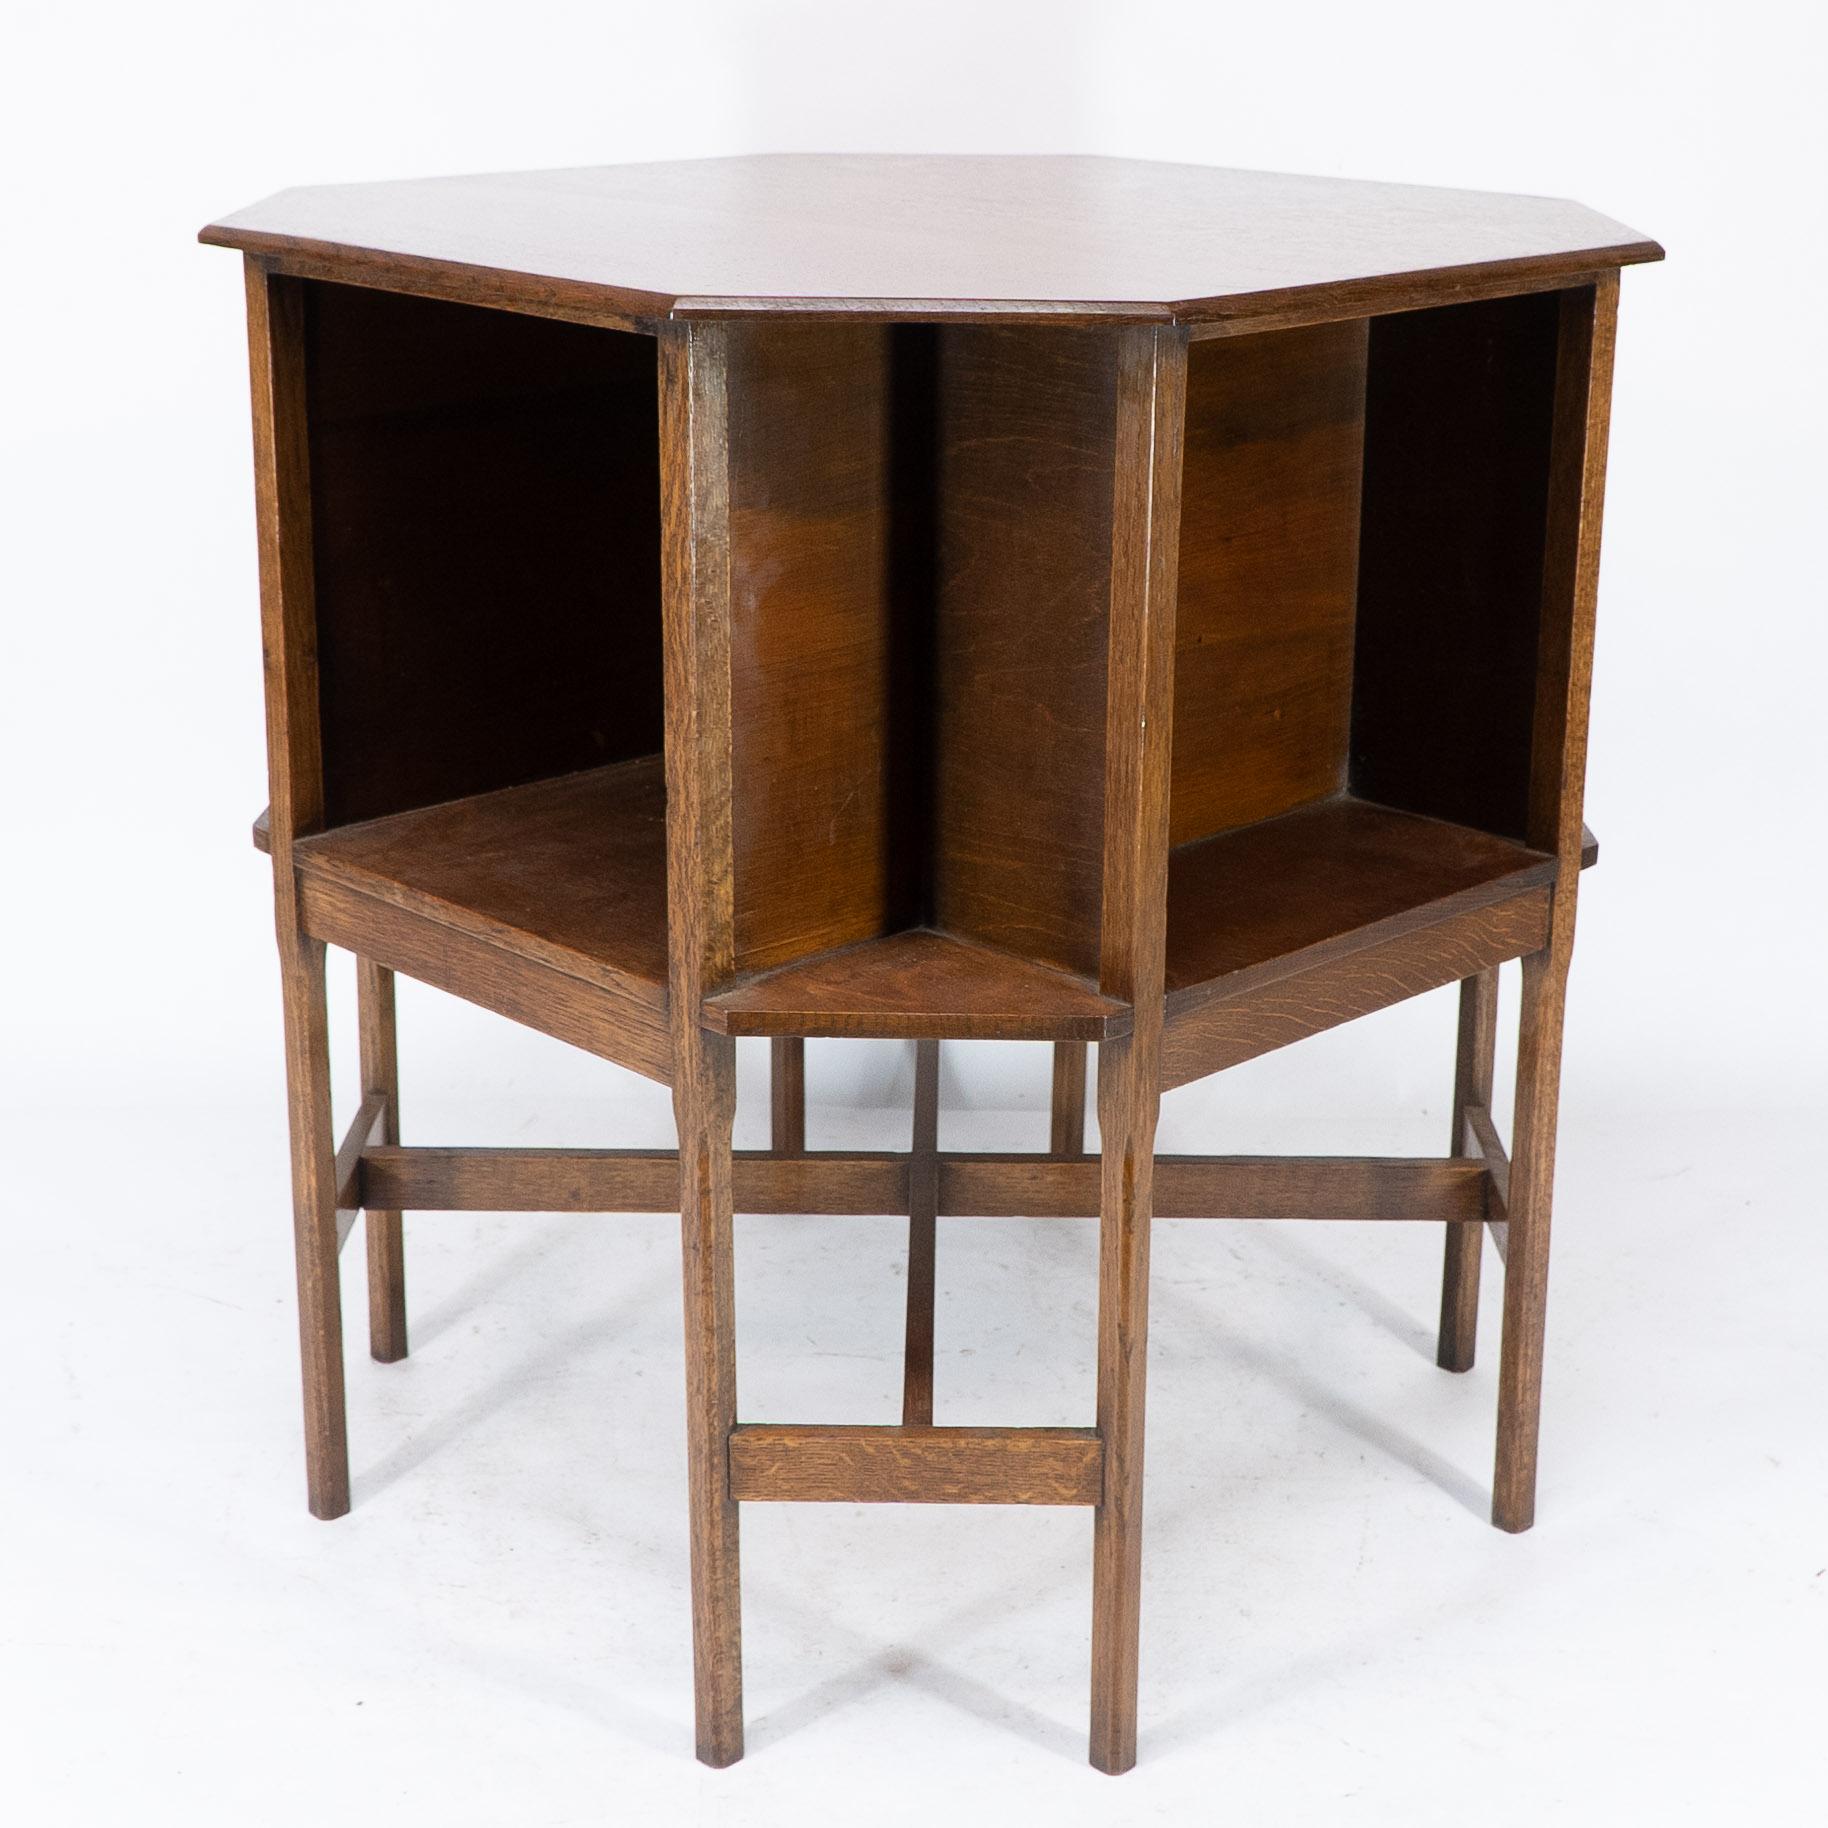 Ambrose Heals Attri, Achteckiger Büchertisch aus Eiche im Arts and Crafts-Stil mit acht Beinen (Eichenholz) im Angebot